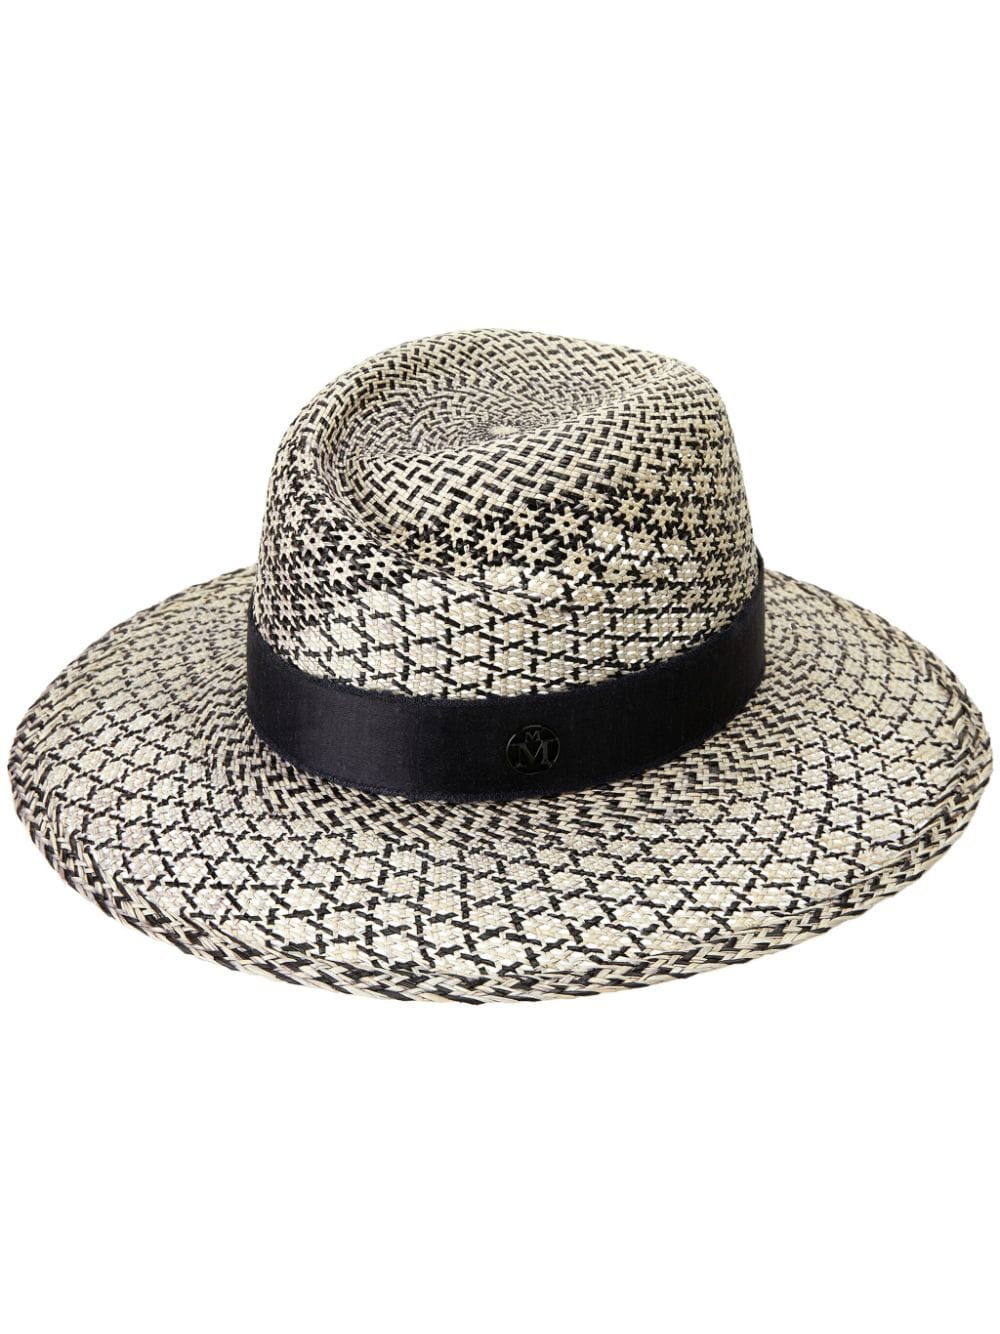 Maison Michel Virginie Straw Fedora Hat In Gray